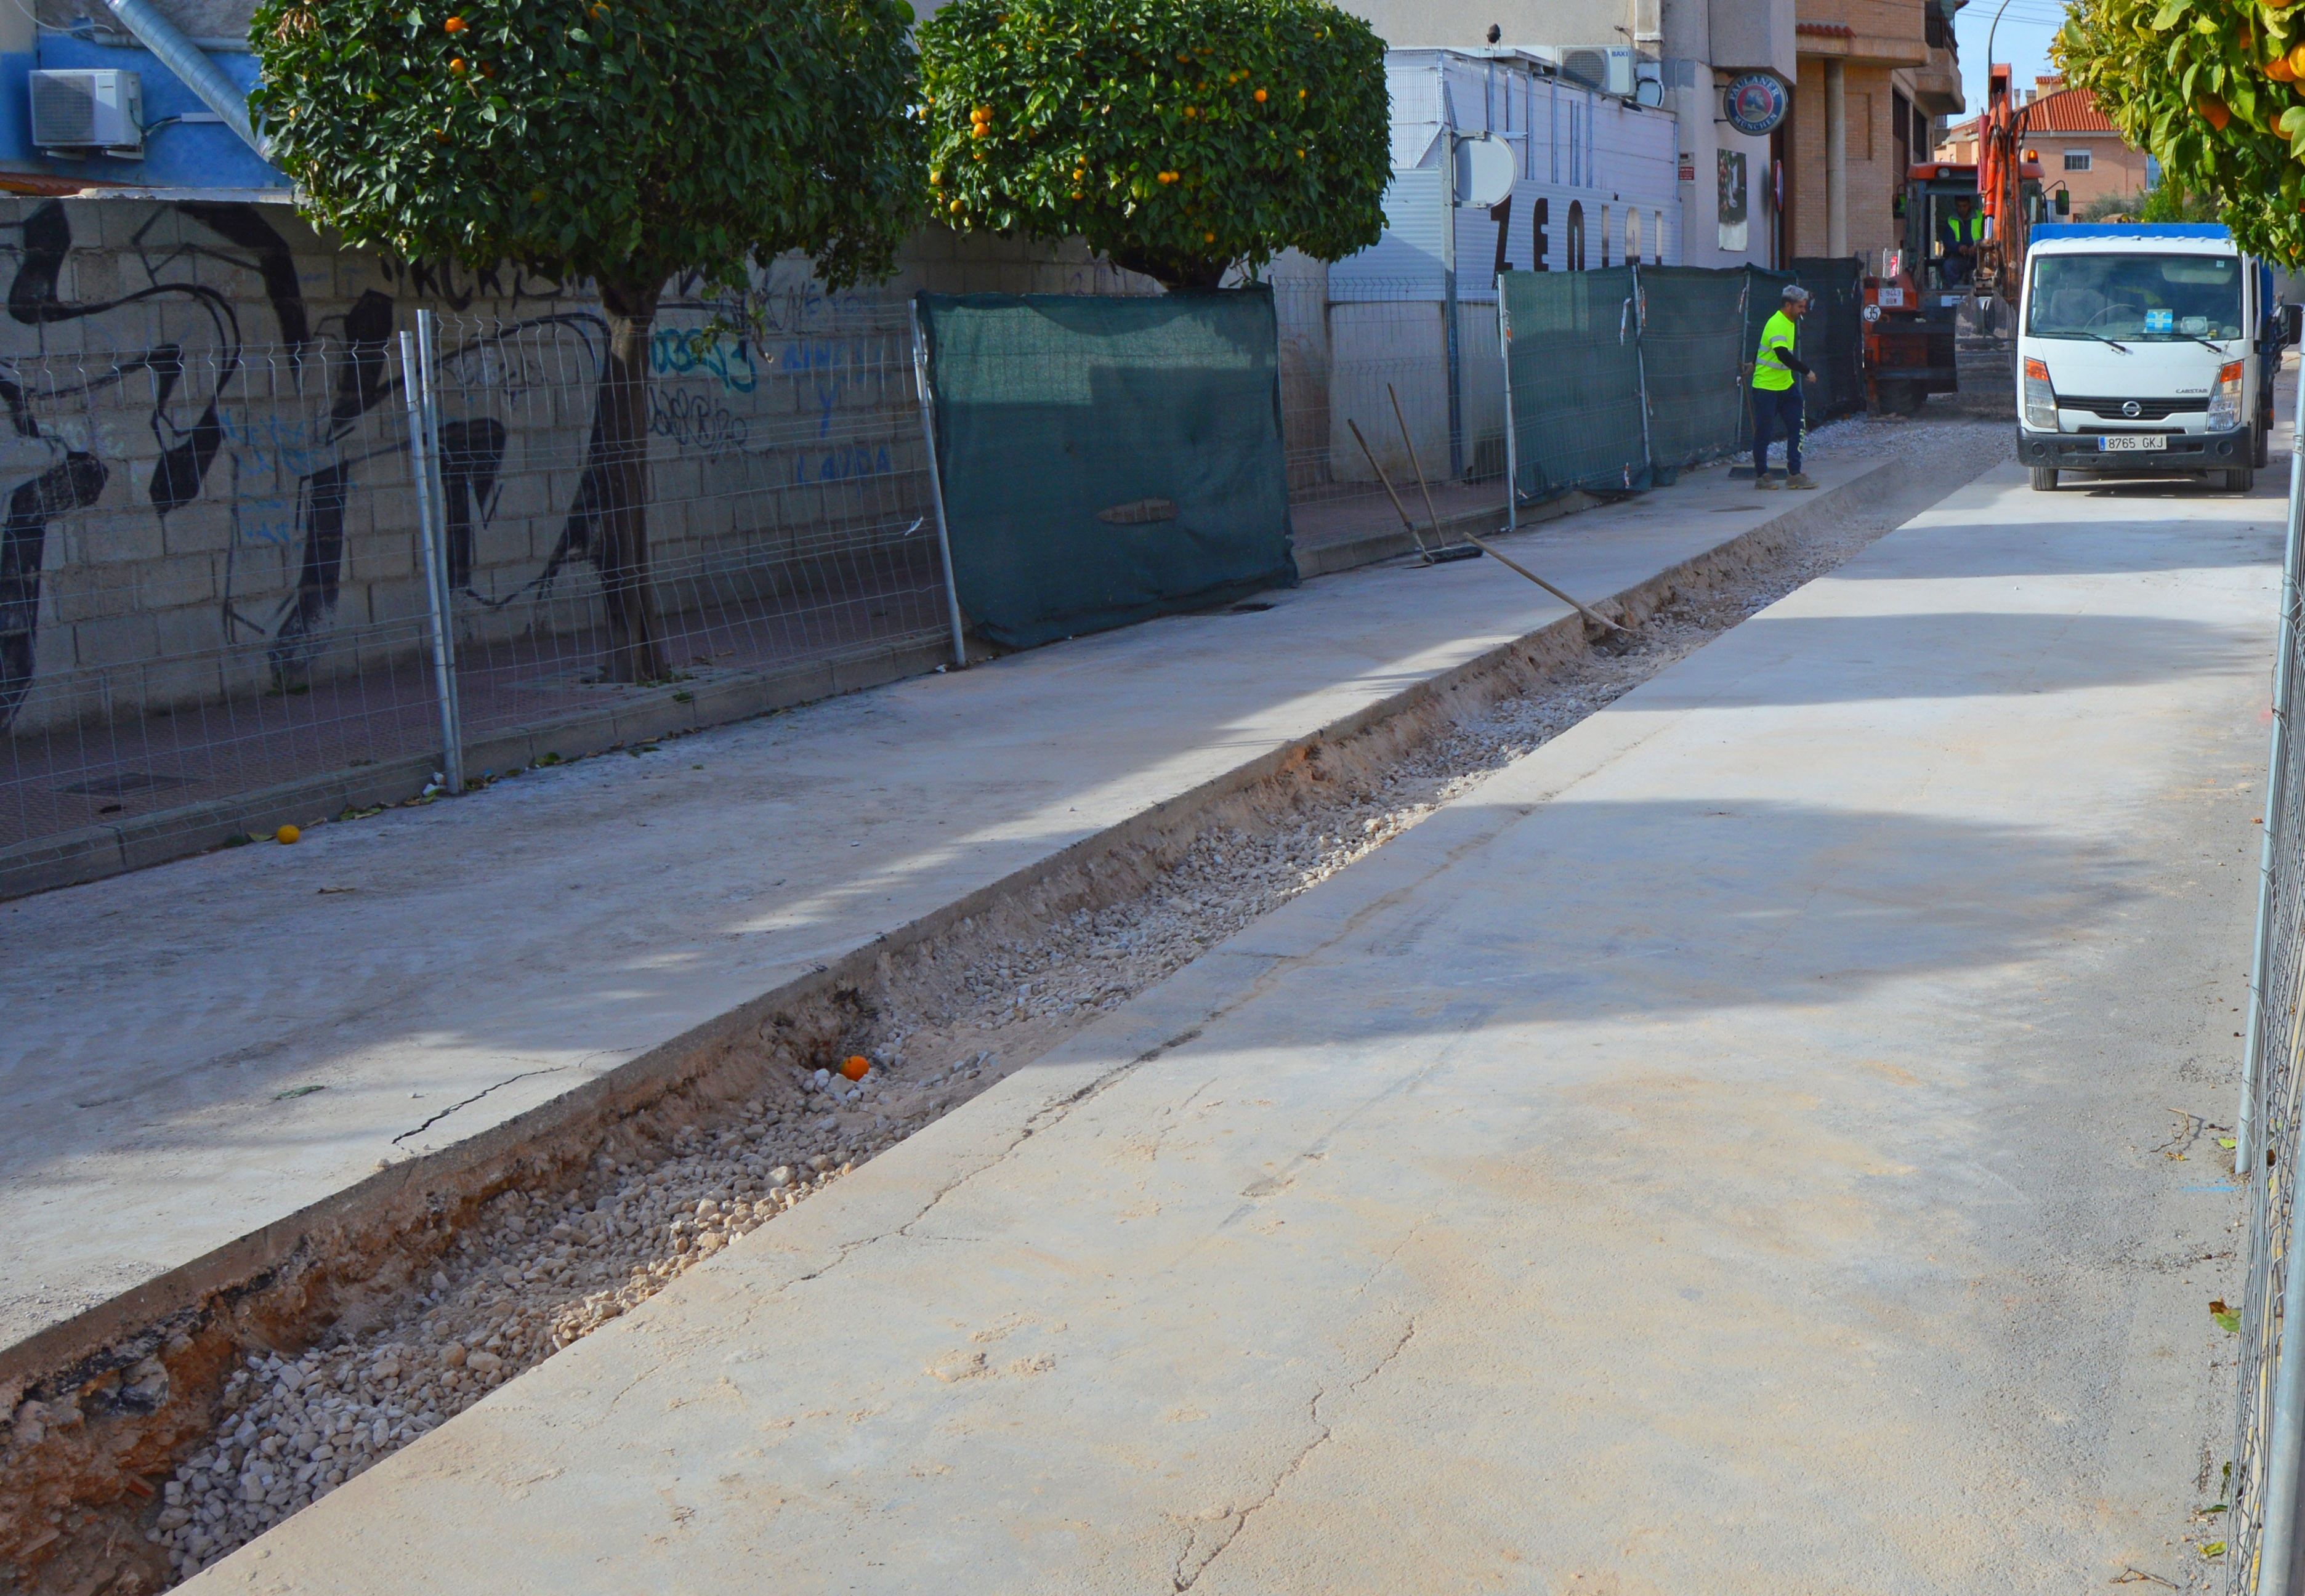 Comienzan las obras para ampliar las prestaciones del colector de saneamiento de la avenida Reyes Católicos4